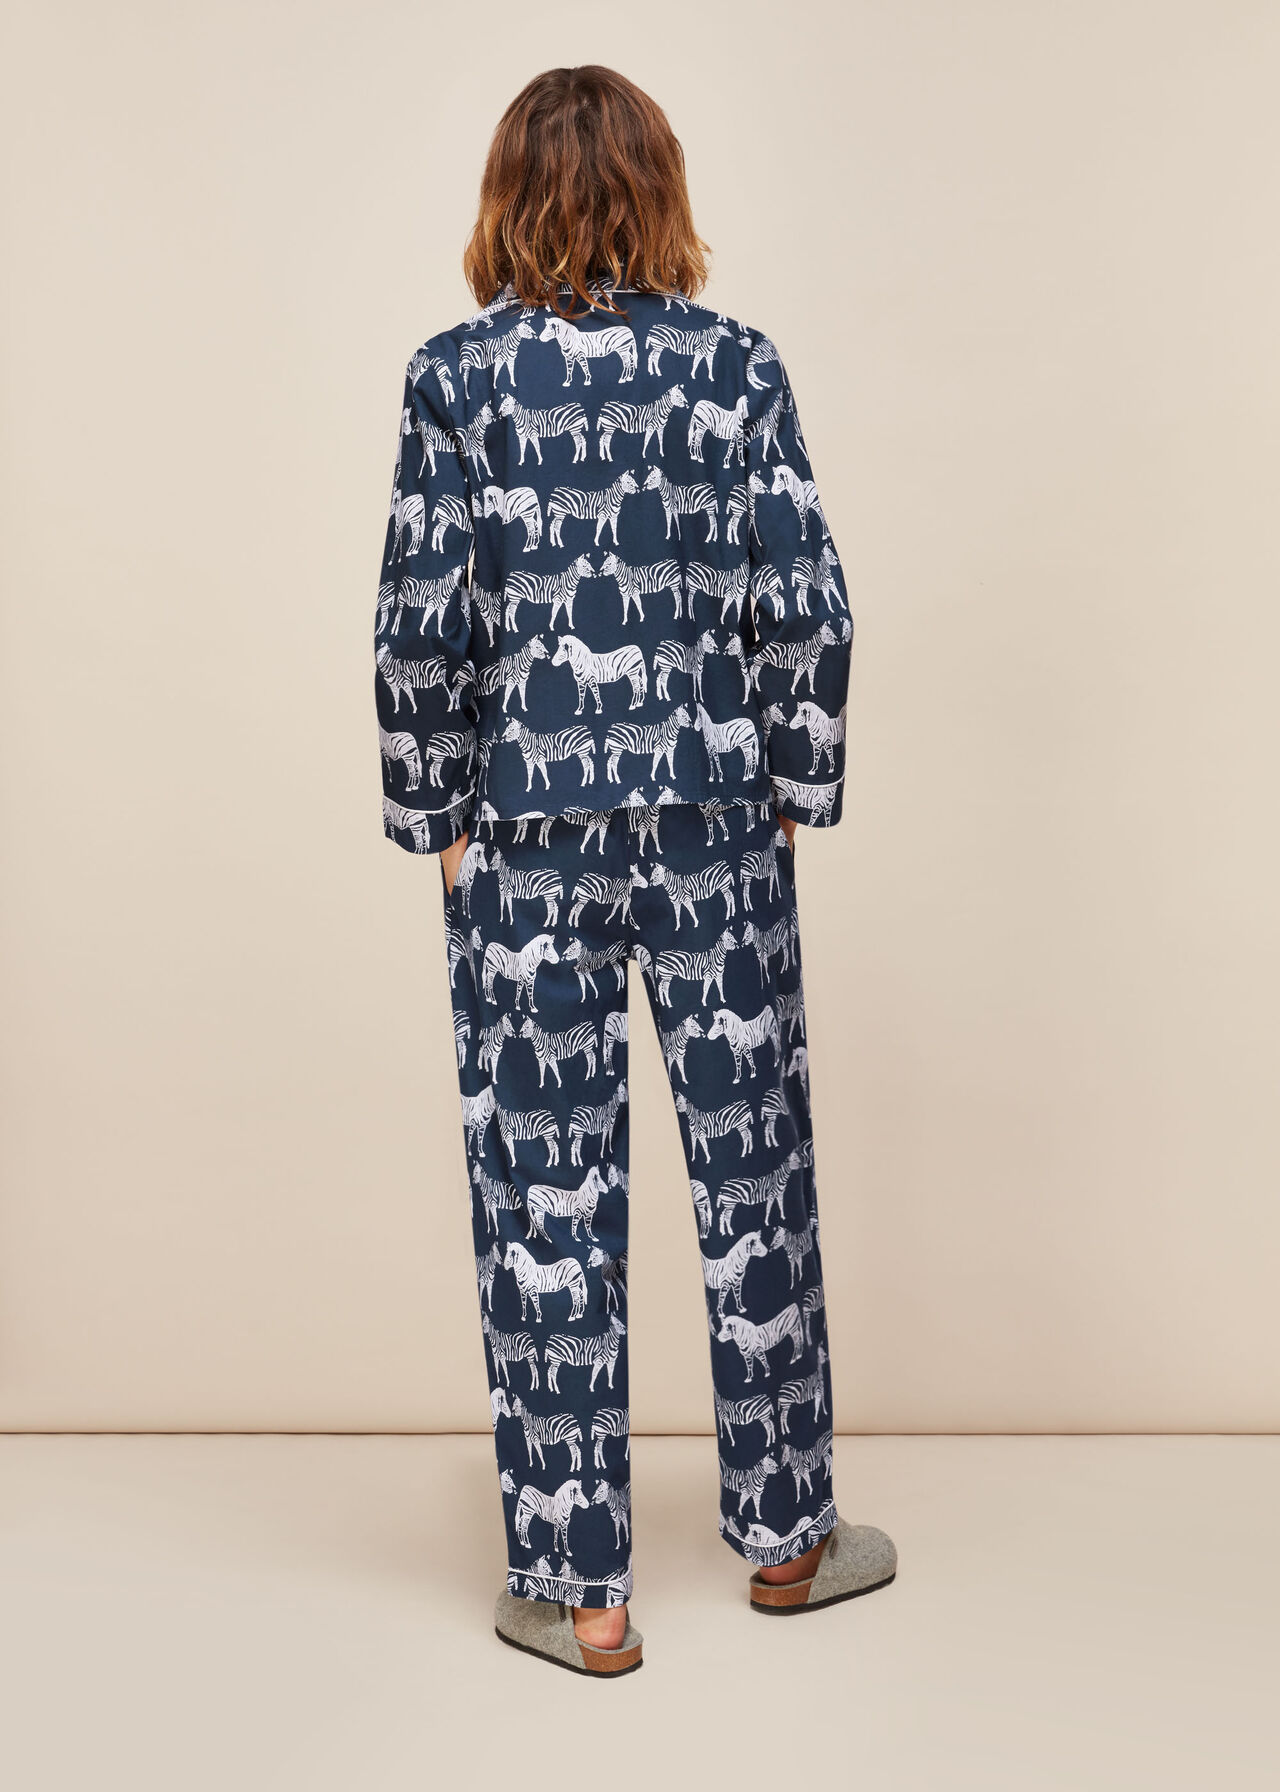 Zebra Print Cotton Pyjama Set